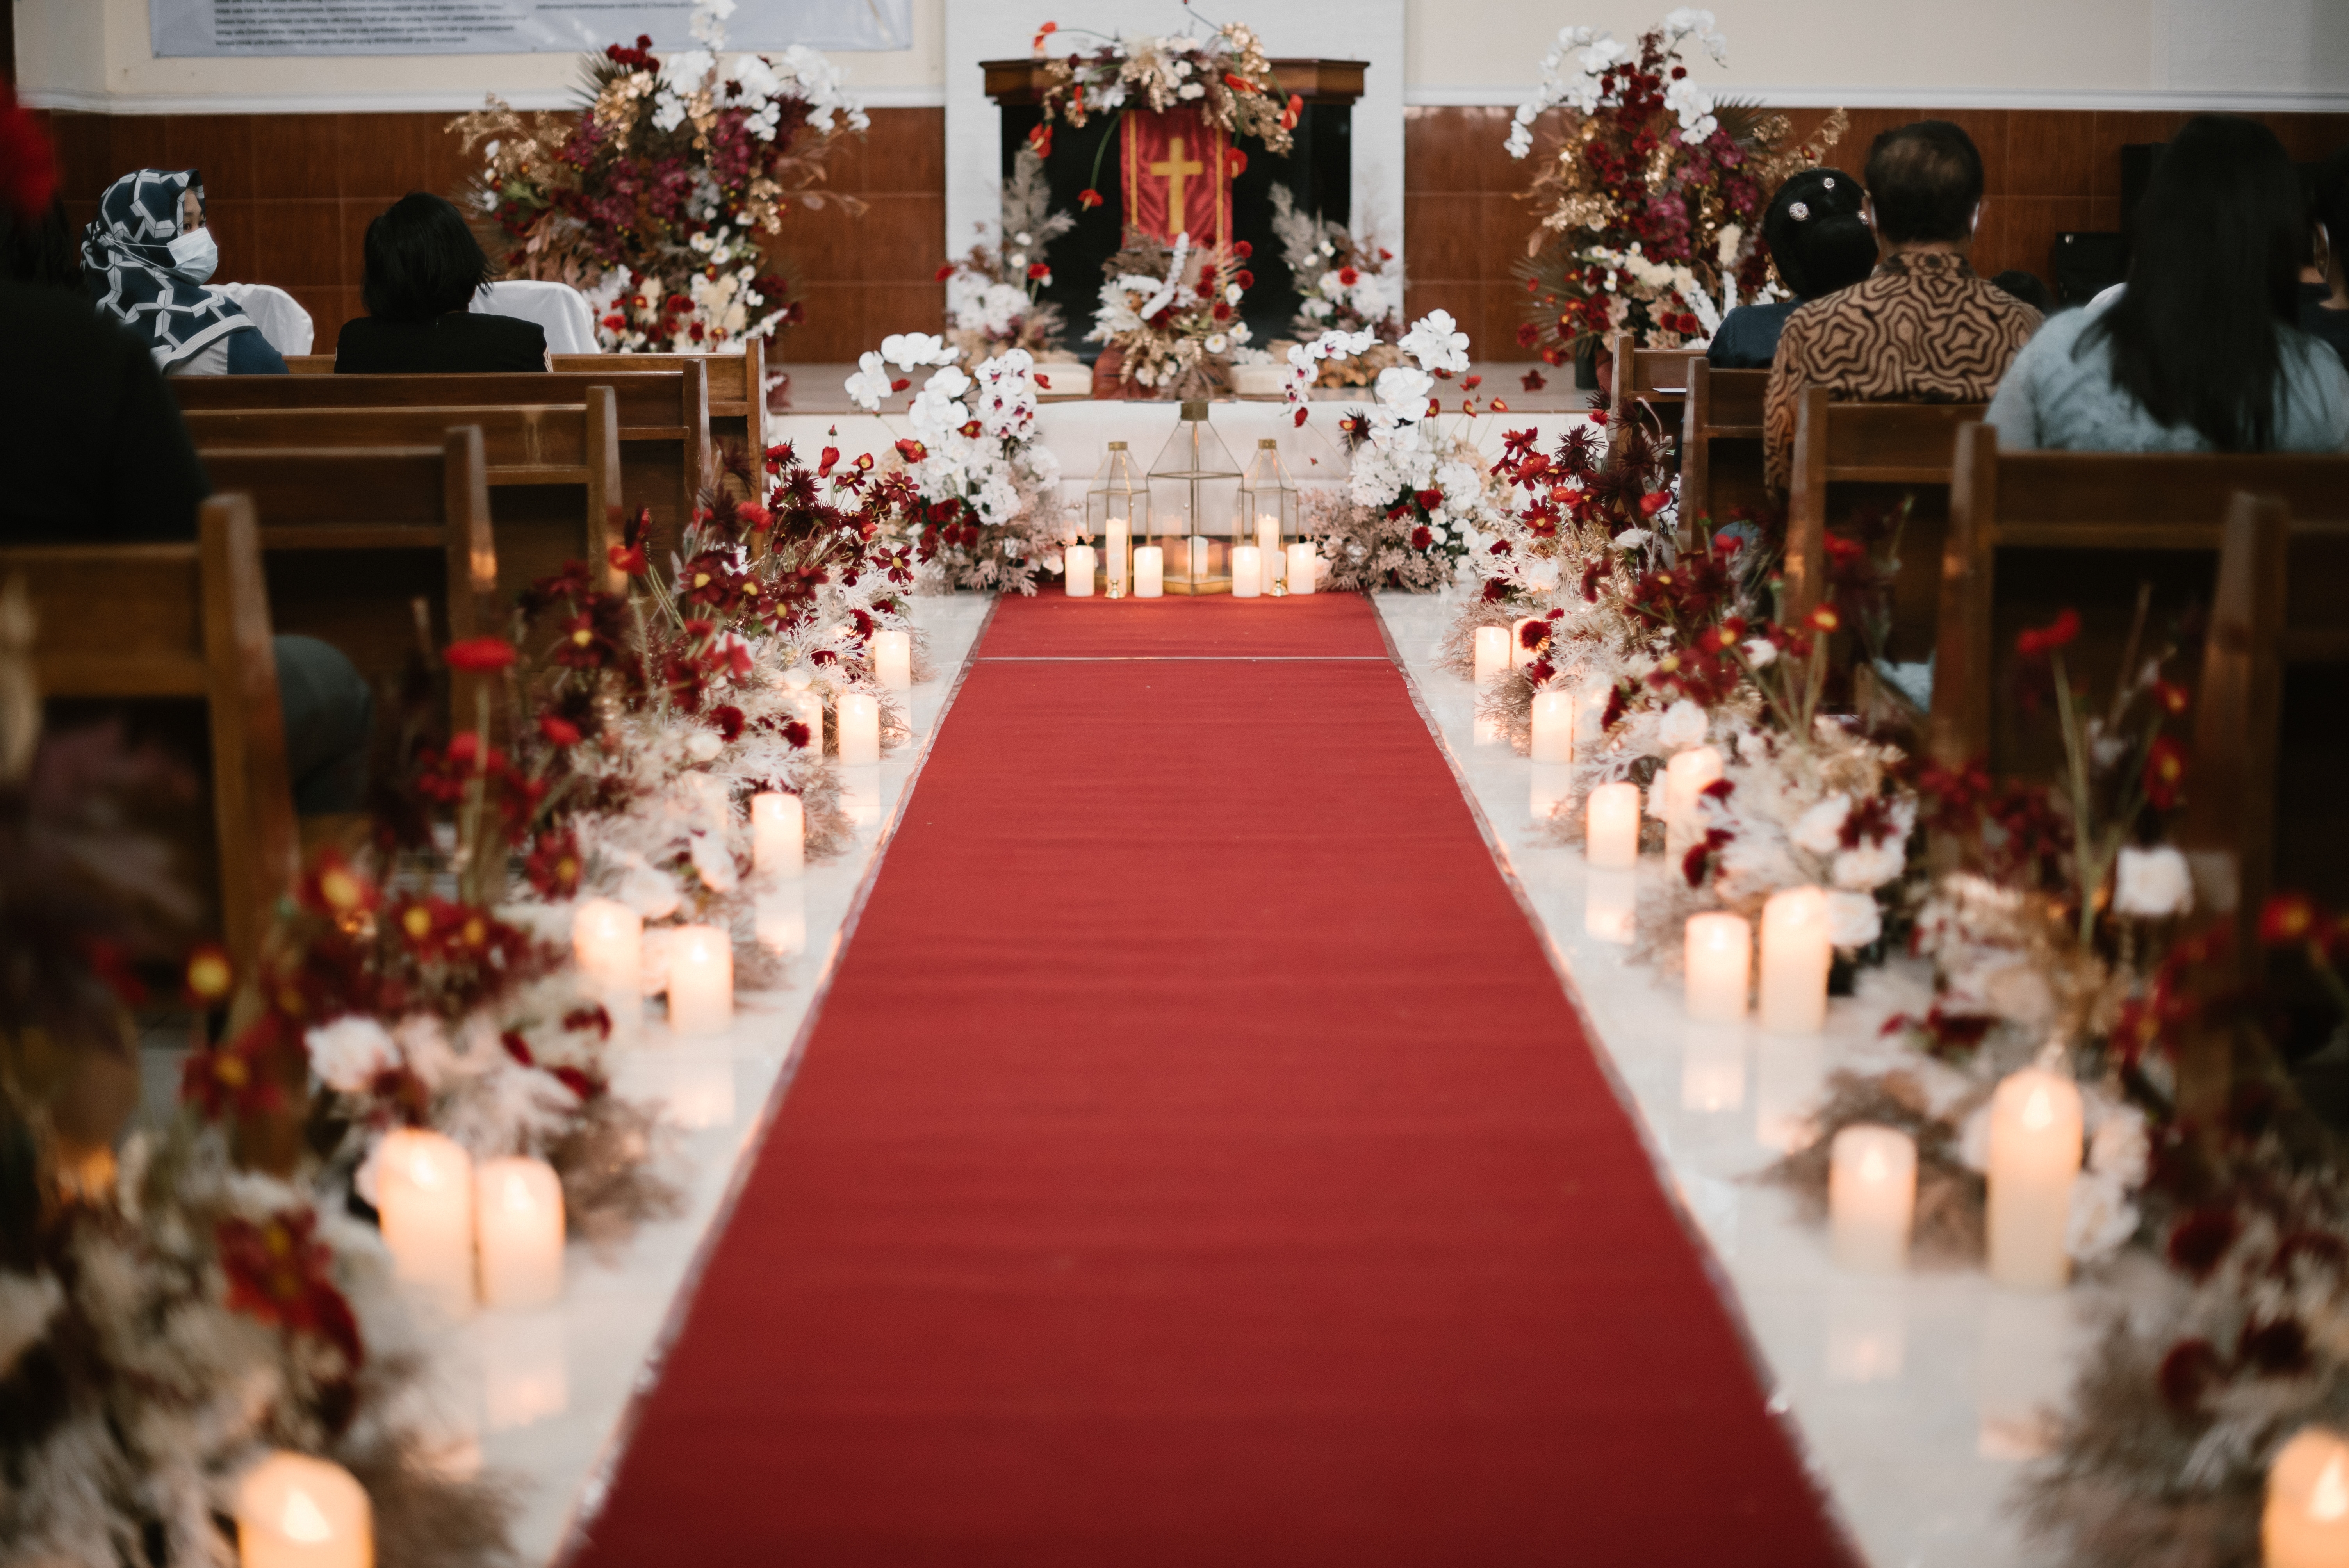 Un pasillo cubierto de velas en una boda | Fuente: Shutterstock